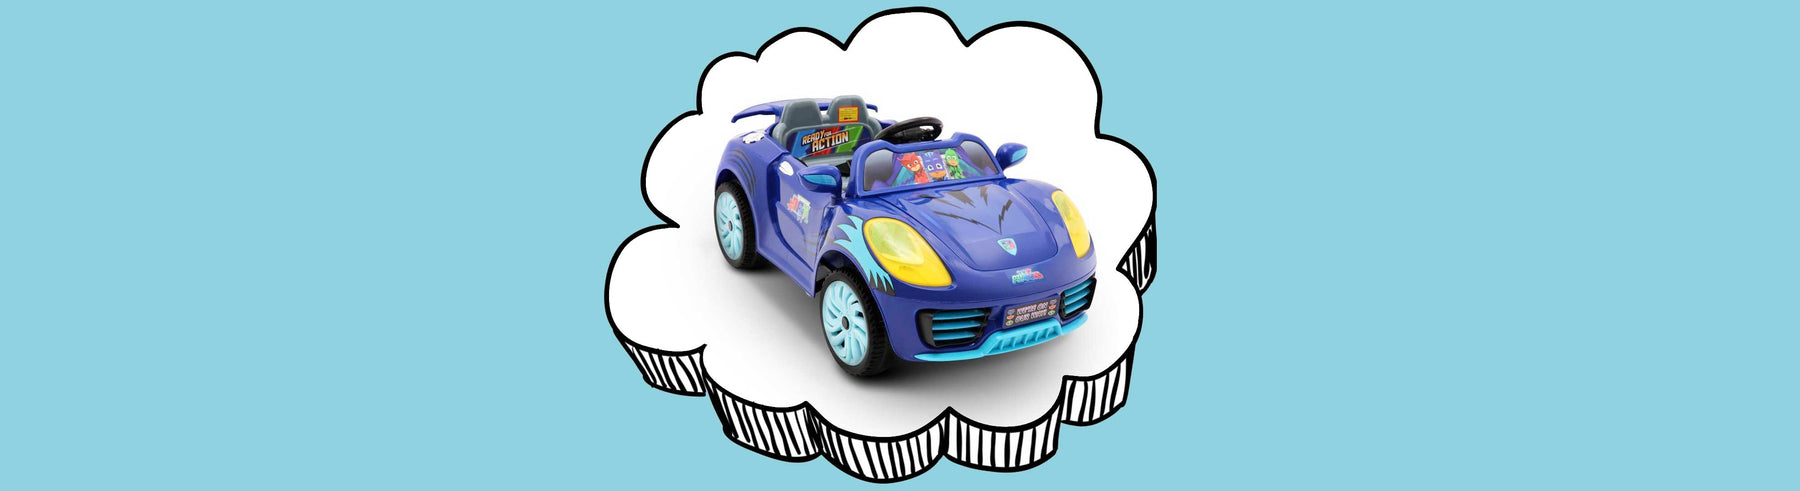 Disney Licensed PJ Masks Kids Ride On Car